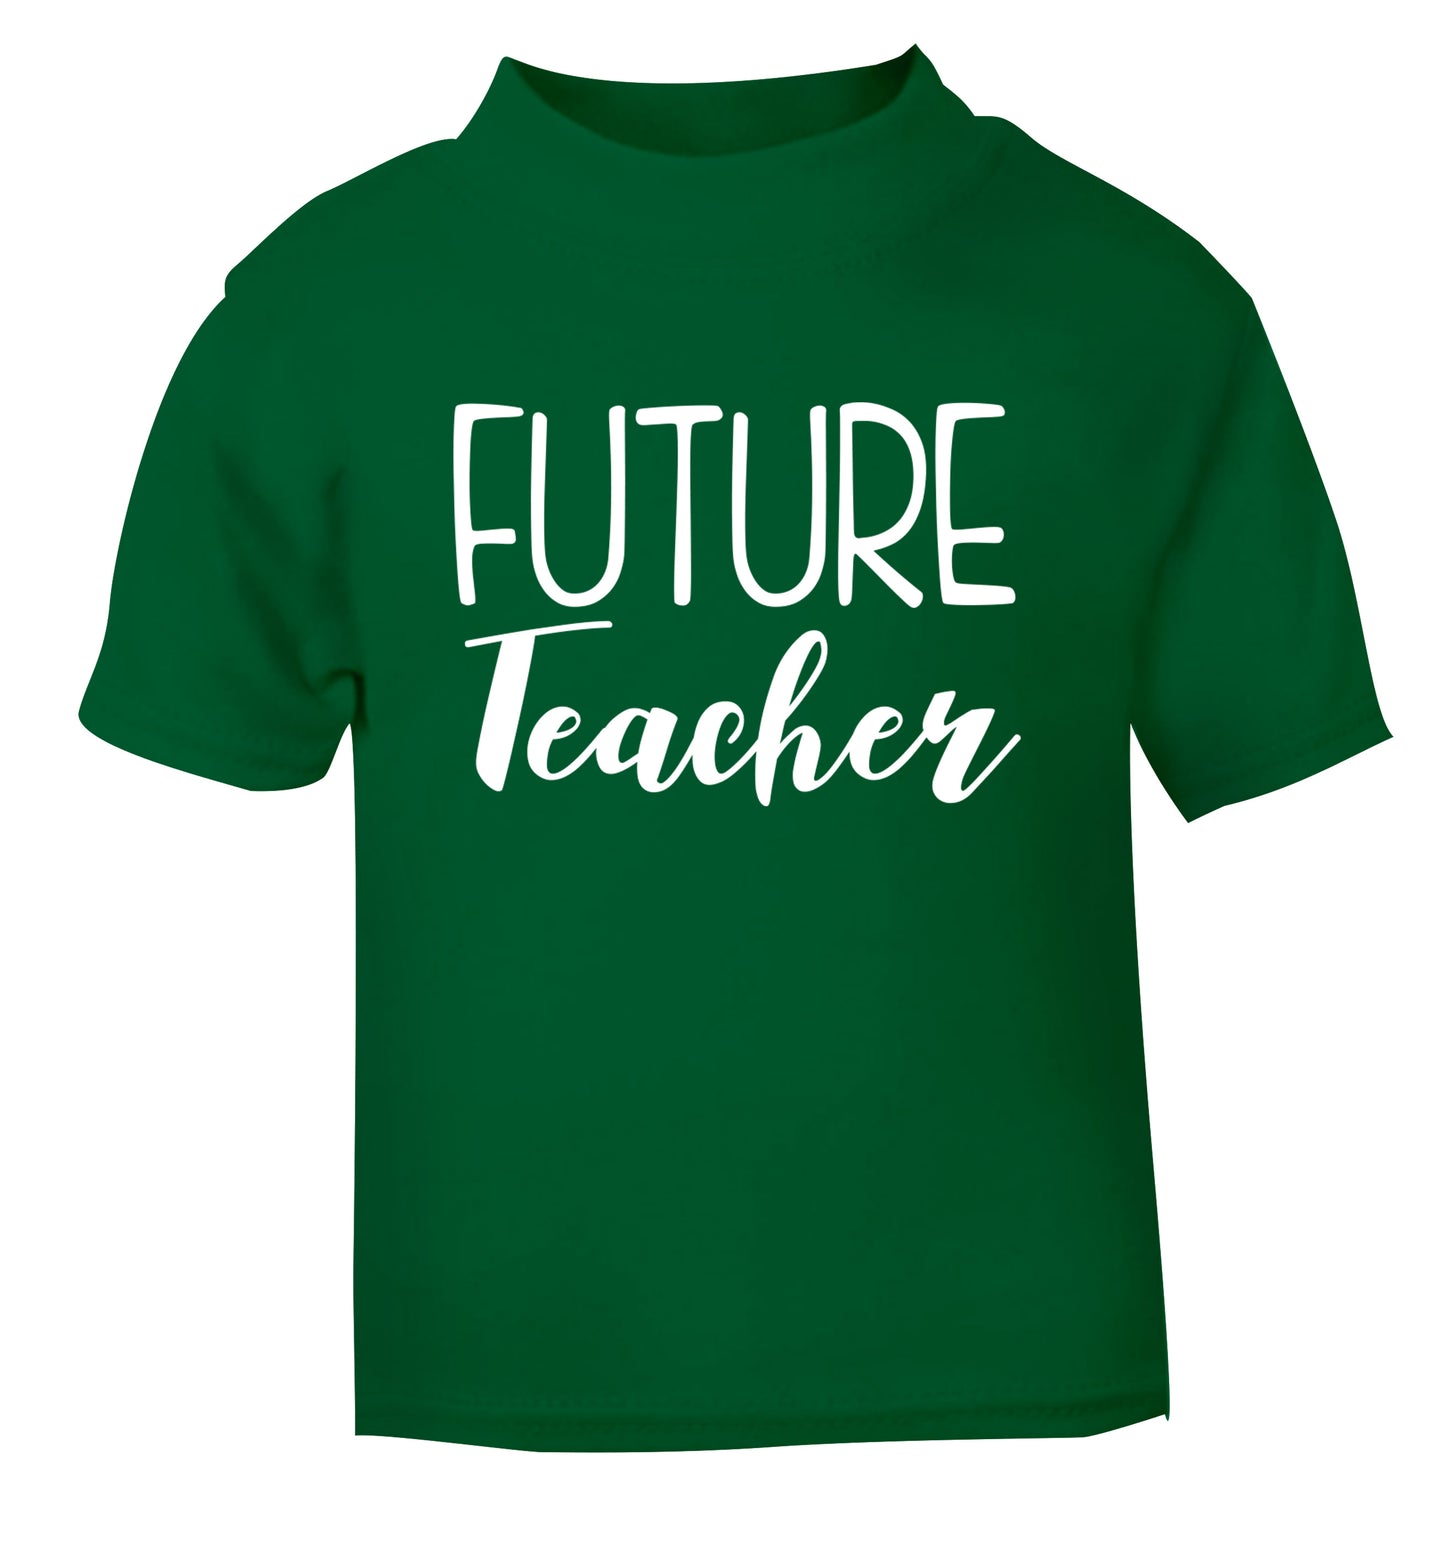 Future teacher green Baby Toddler Tshirt 2 Years